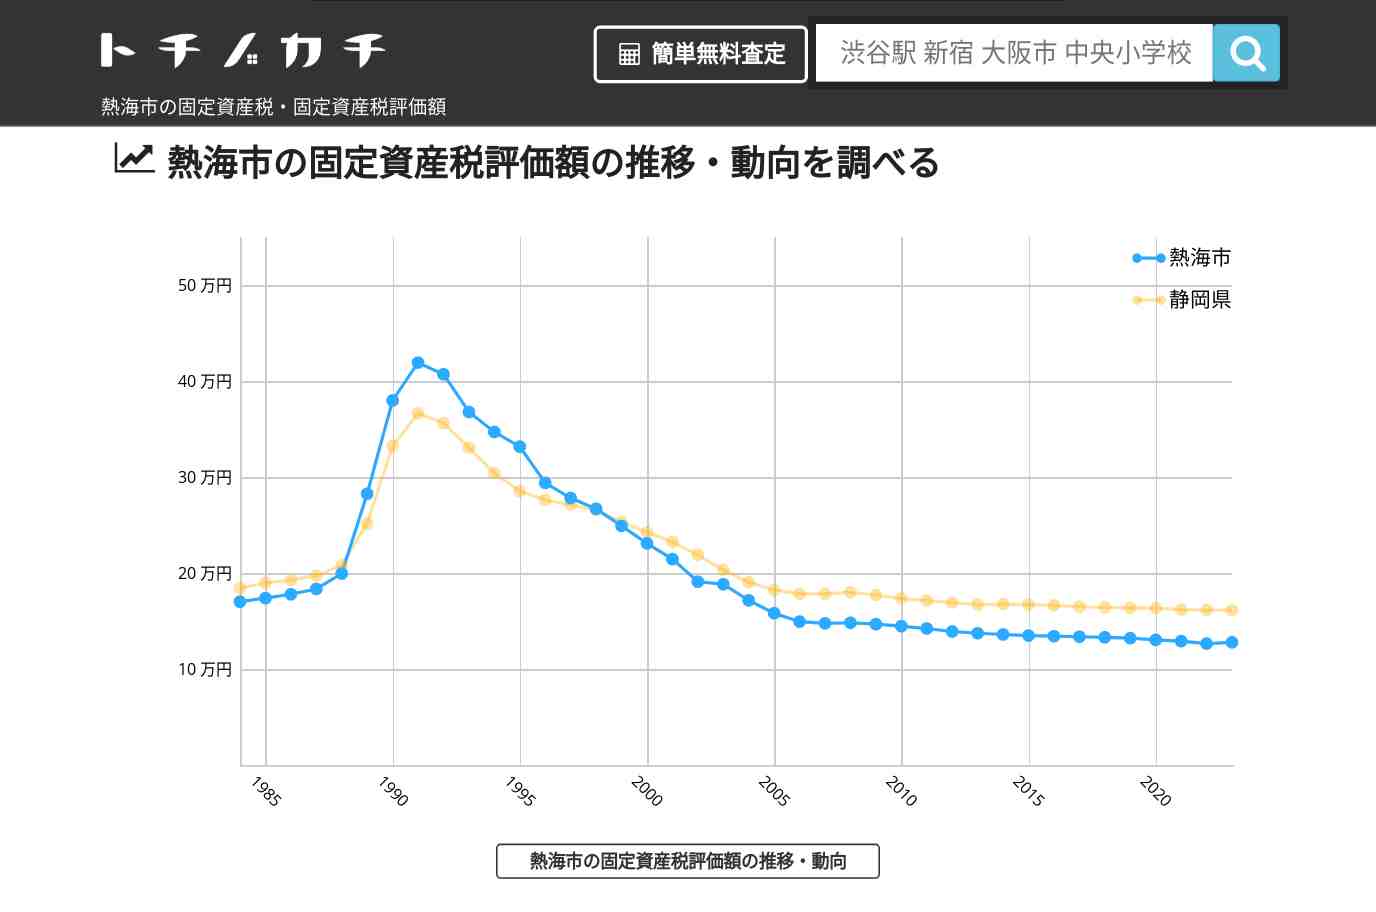 小嵐中学校(静岡県 熱海市)周辺の固定資産税・固定資産税評価額 | トチノカチ